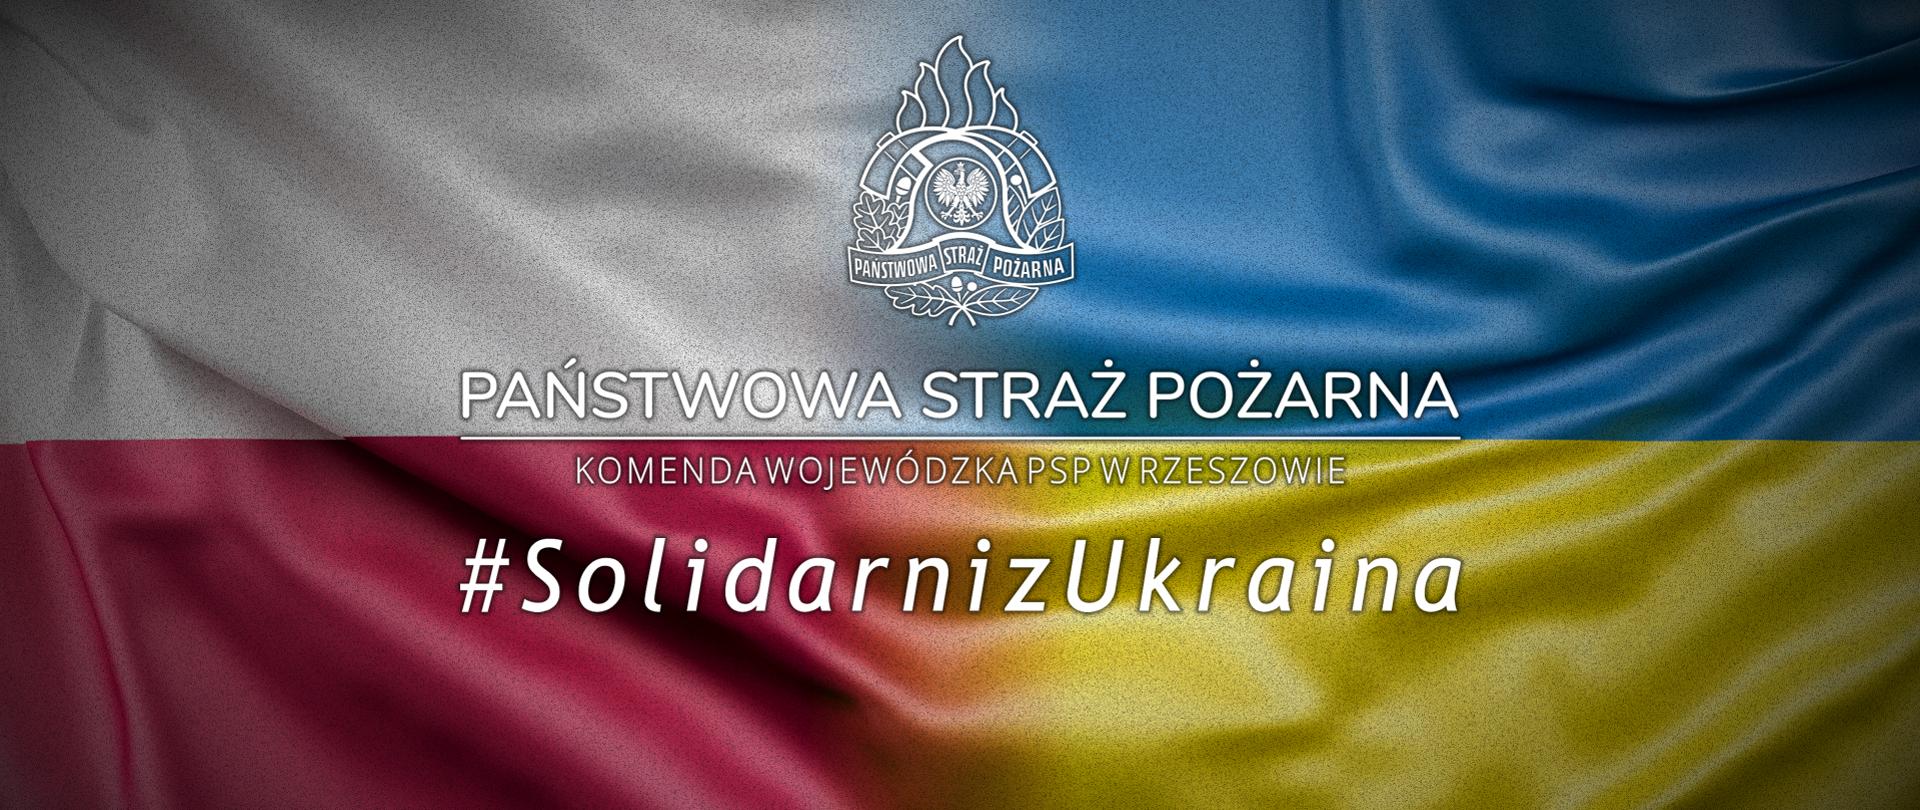 Infografika. W tle flaga Polski i Ukrainy. Napis Państwowa Straż Pożarna - Komenda Wojewódzka PSP w Rzeszowie - #SolidarnizUkraina